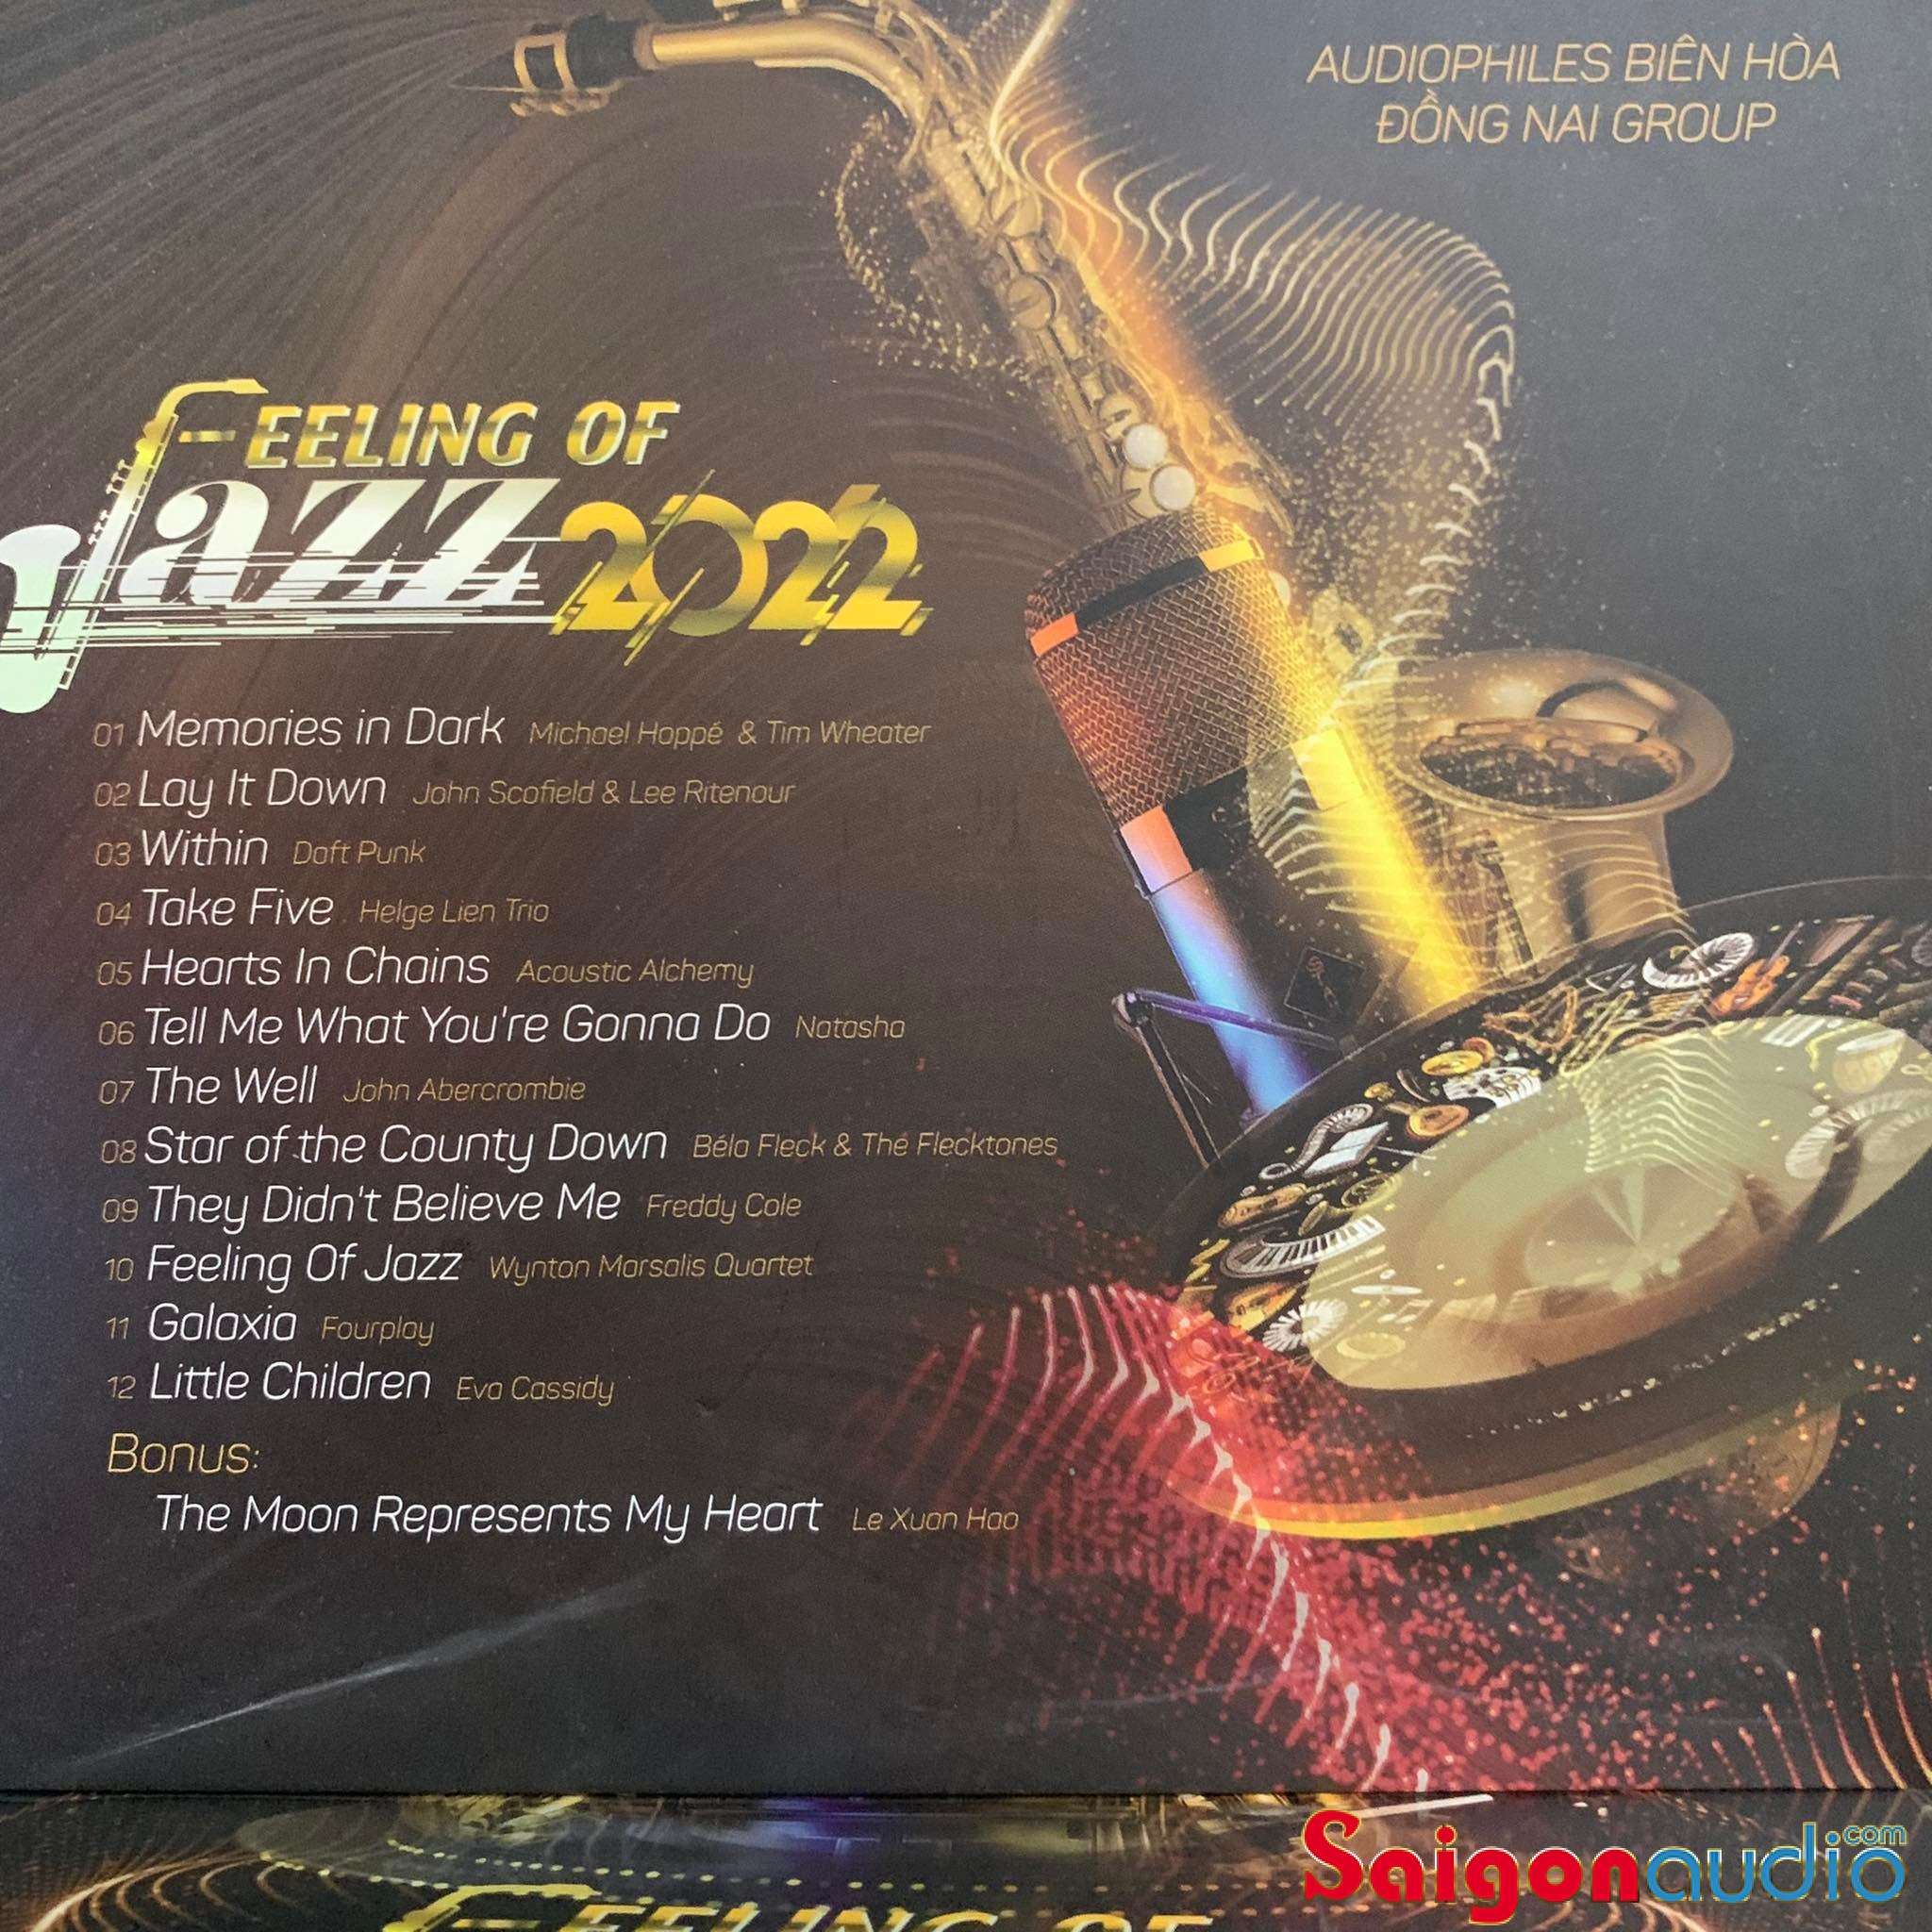 Đĩa CD nhạc gốc Duy Hưng - Áo Nhuộm Hoàng Hôn (31/03/2022) (Free ship khi mua 2 đĩa CD cùng hoặc khác loại)